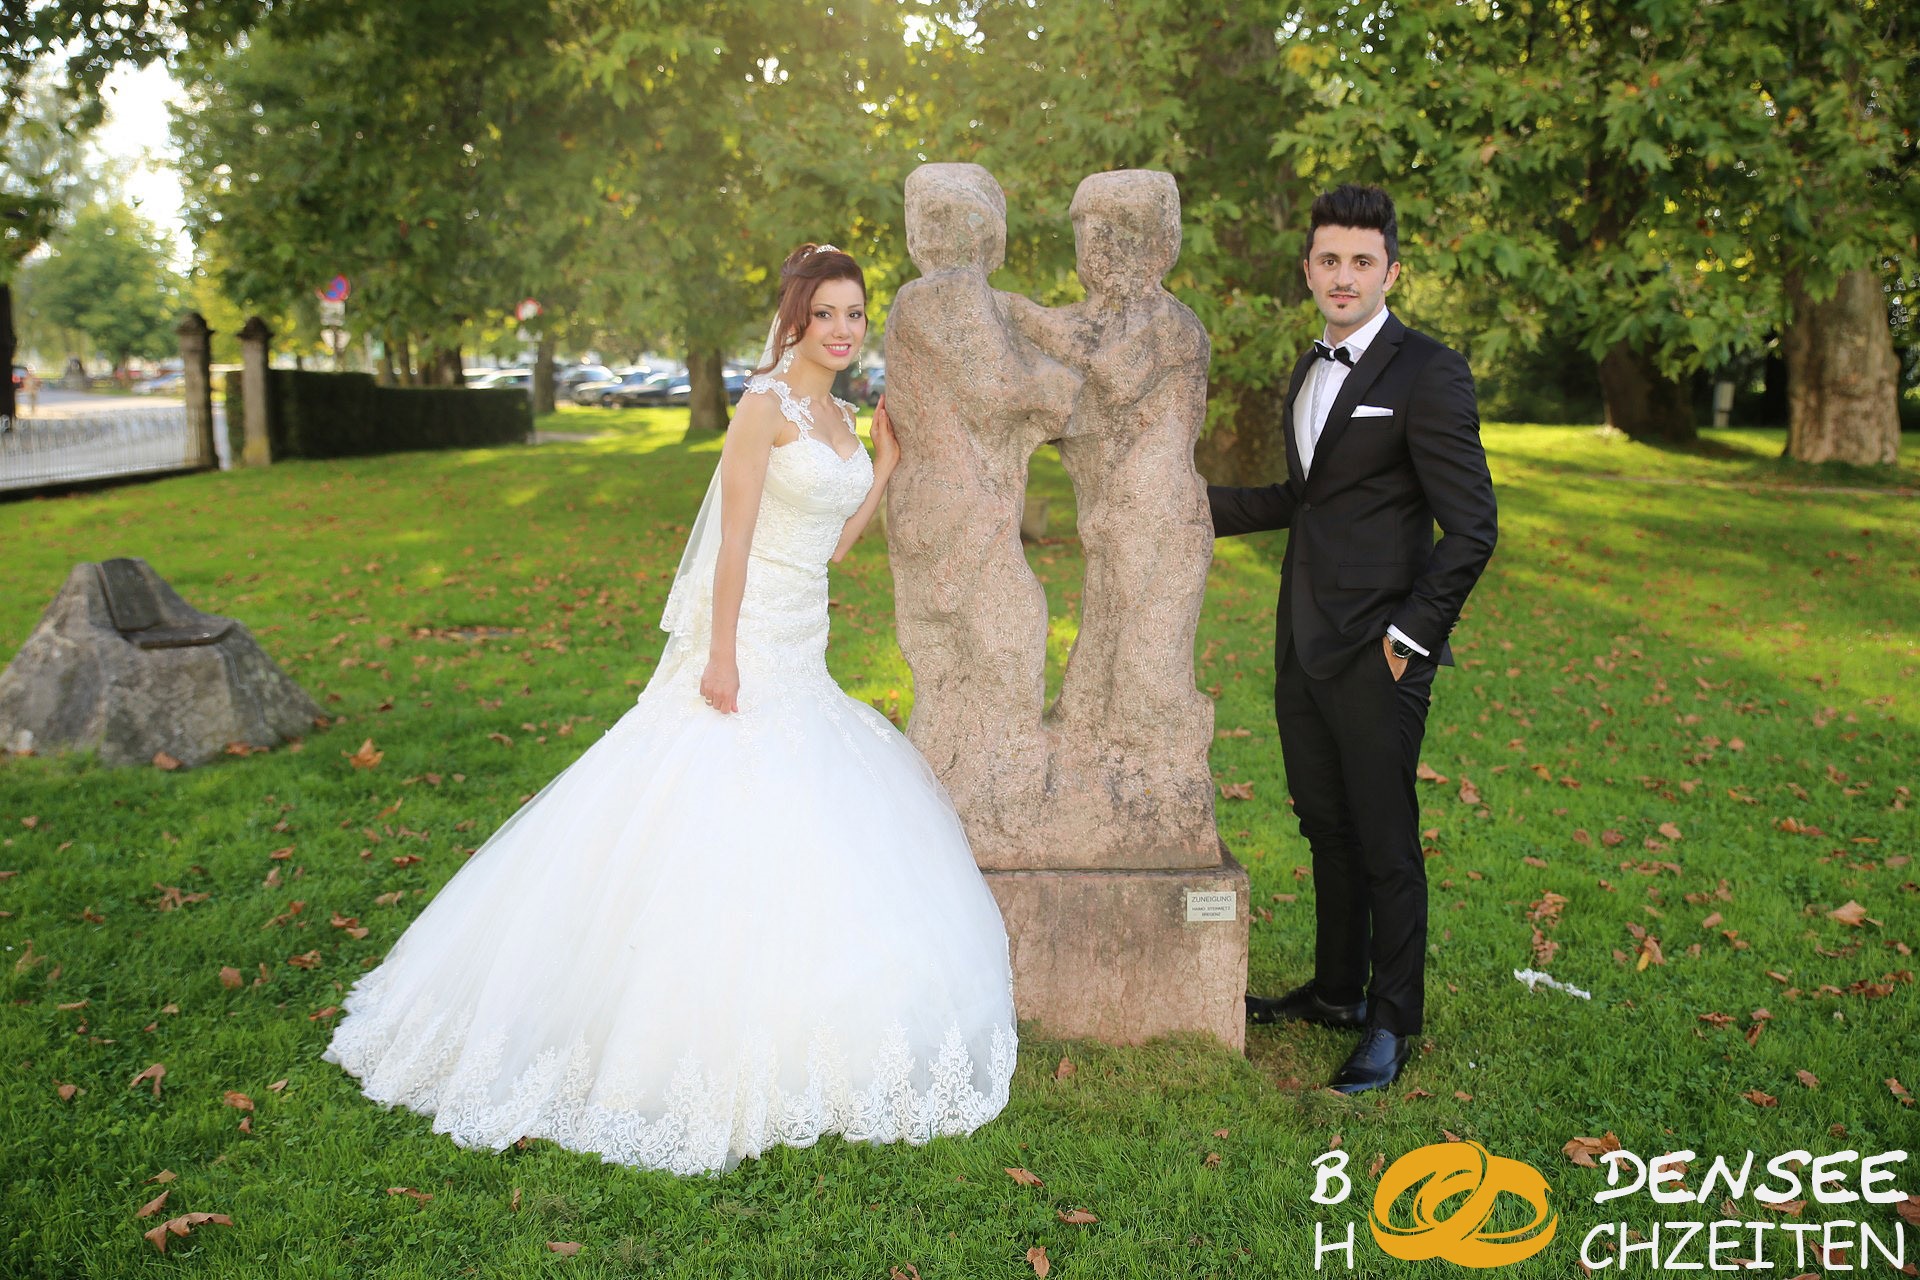 2014 09 06 Hochzeit Hohenems Sercan Muazzez BODENSEE HOCHZEITEN COM IMG 8509